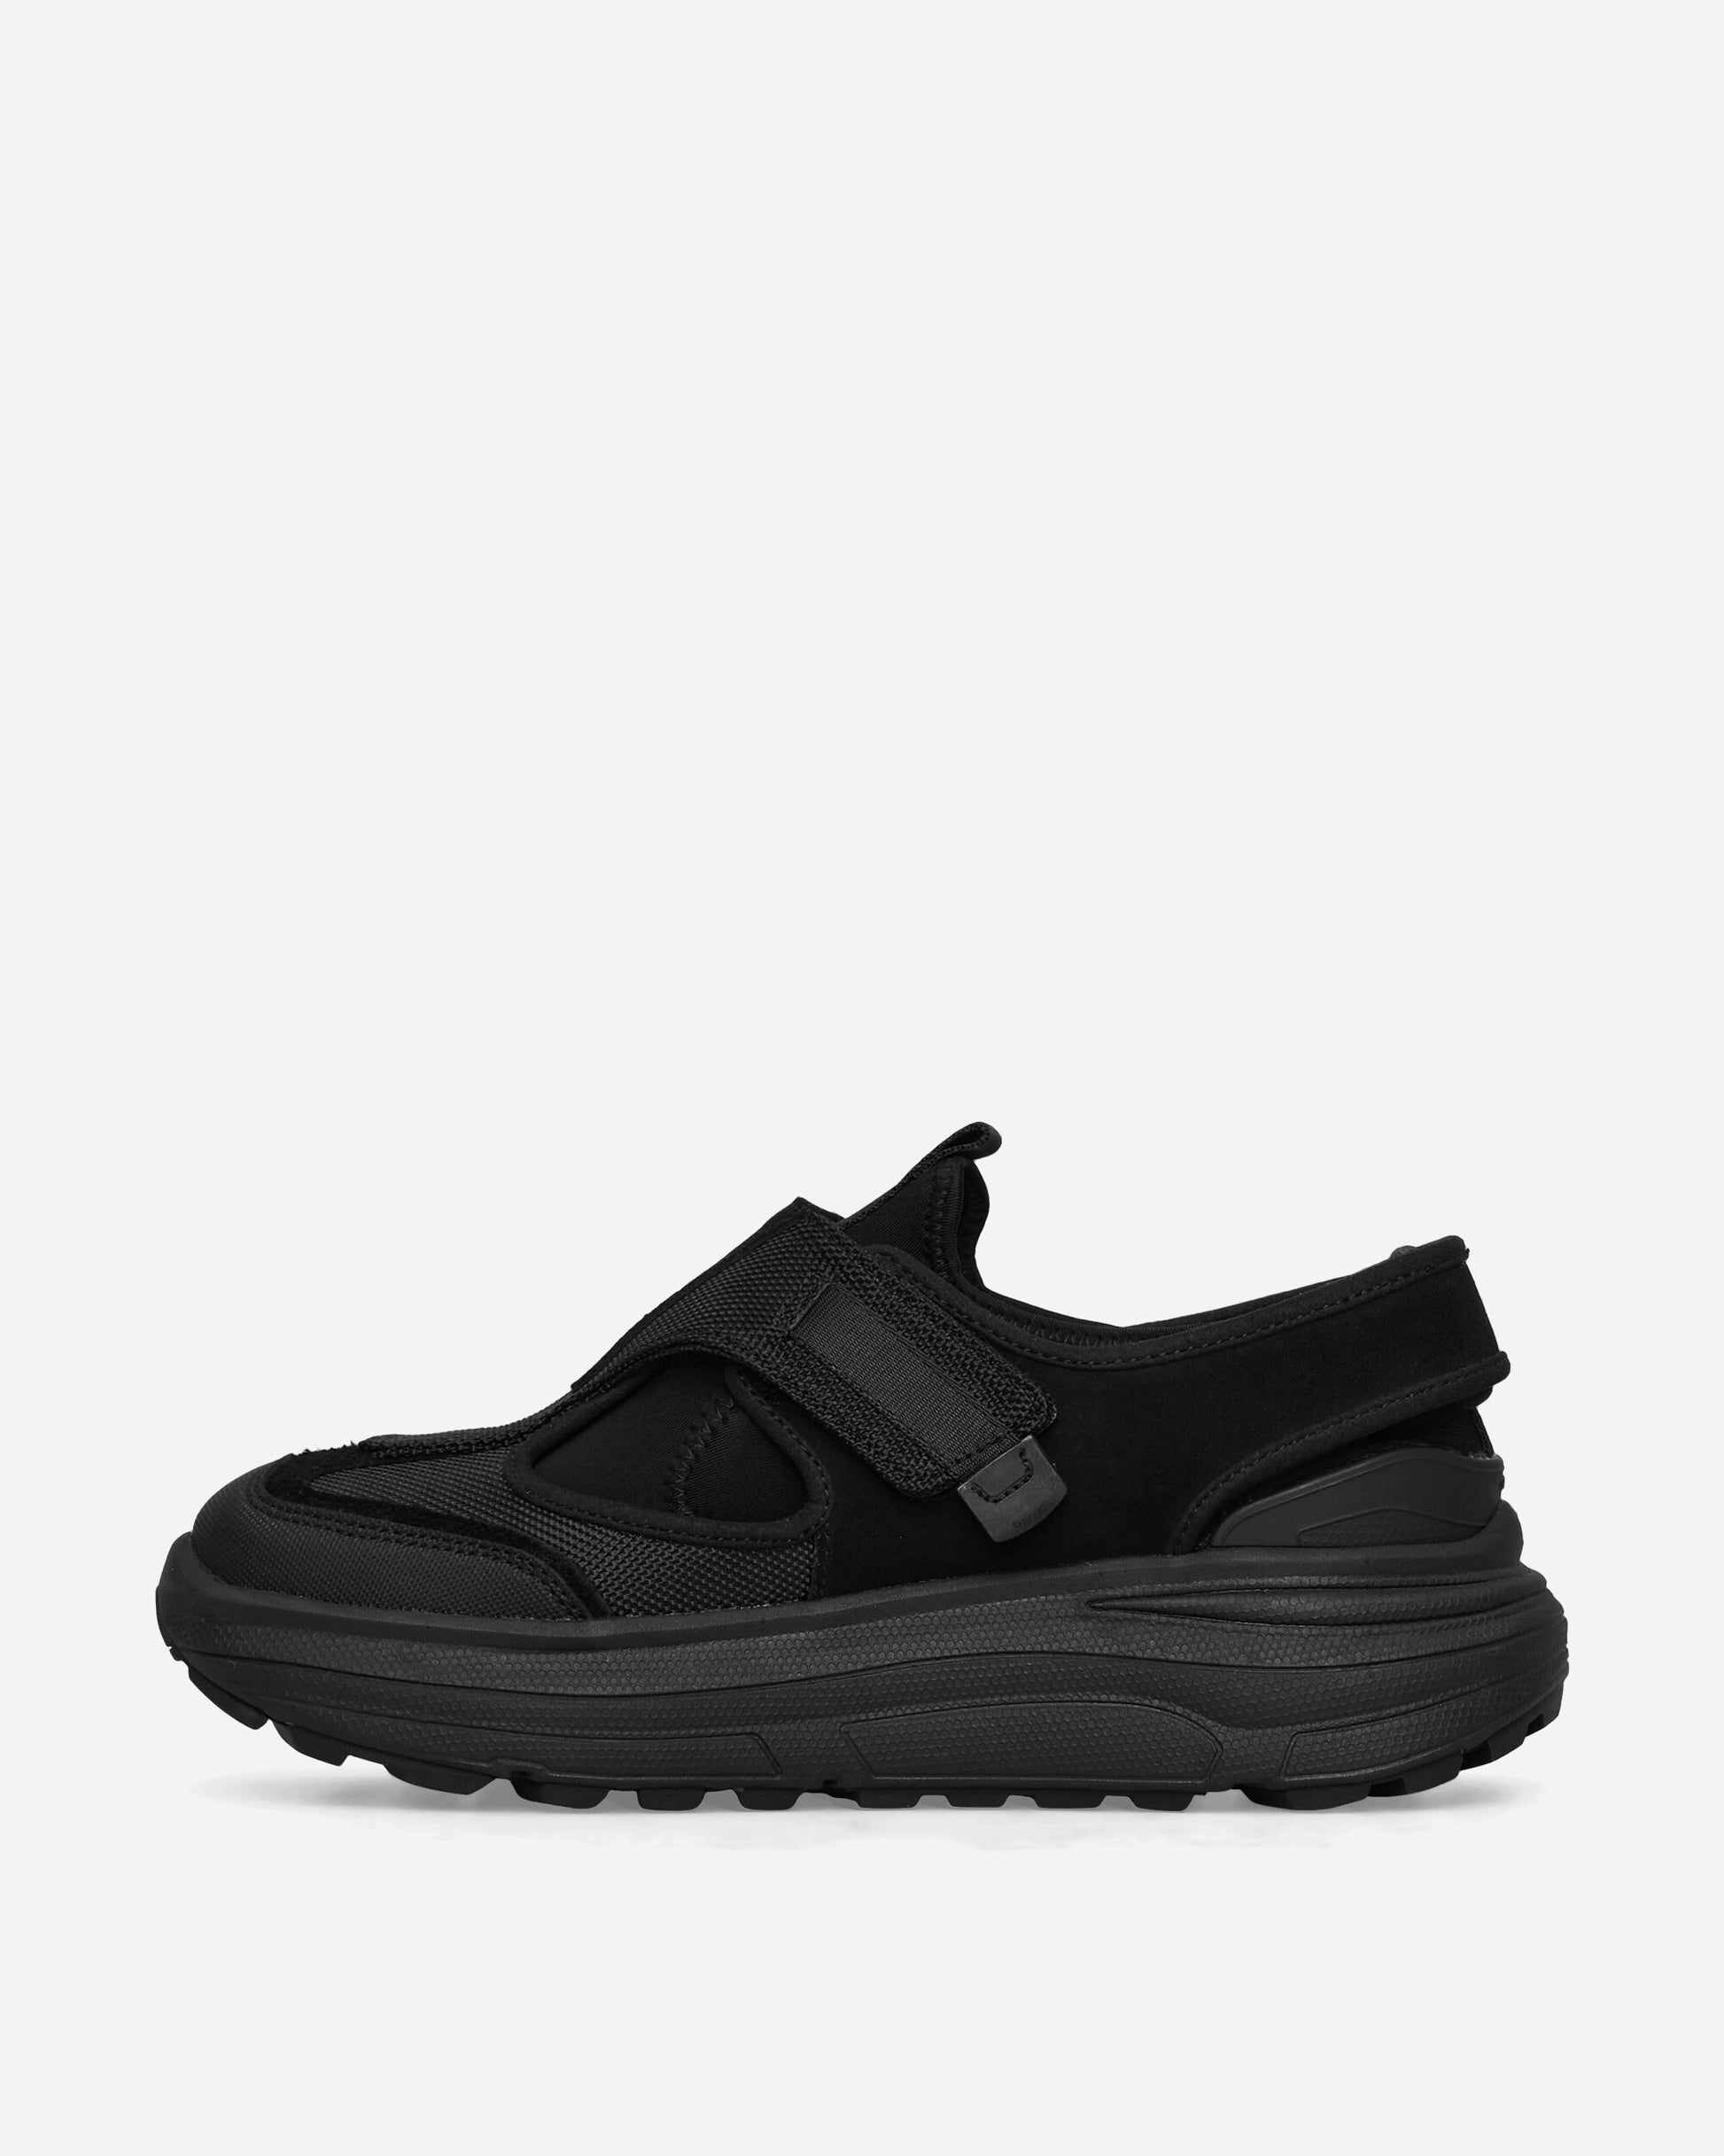 Suicoke Tred Black Sandals and Slides Sandals and Mules OG349 BLK